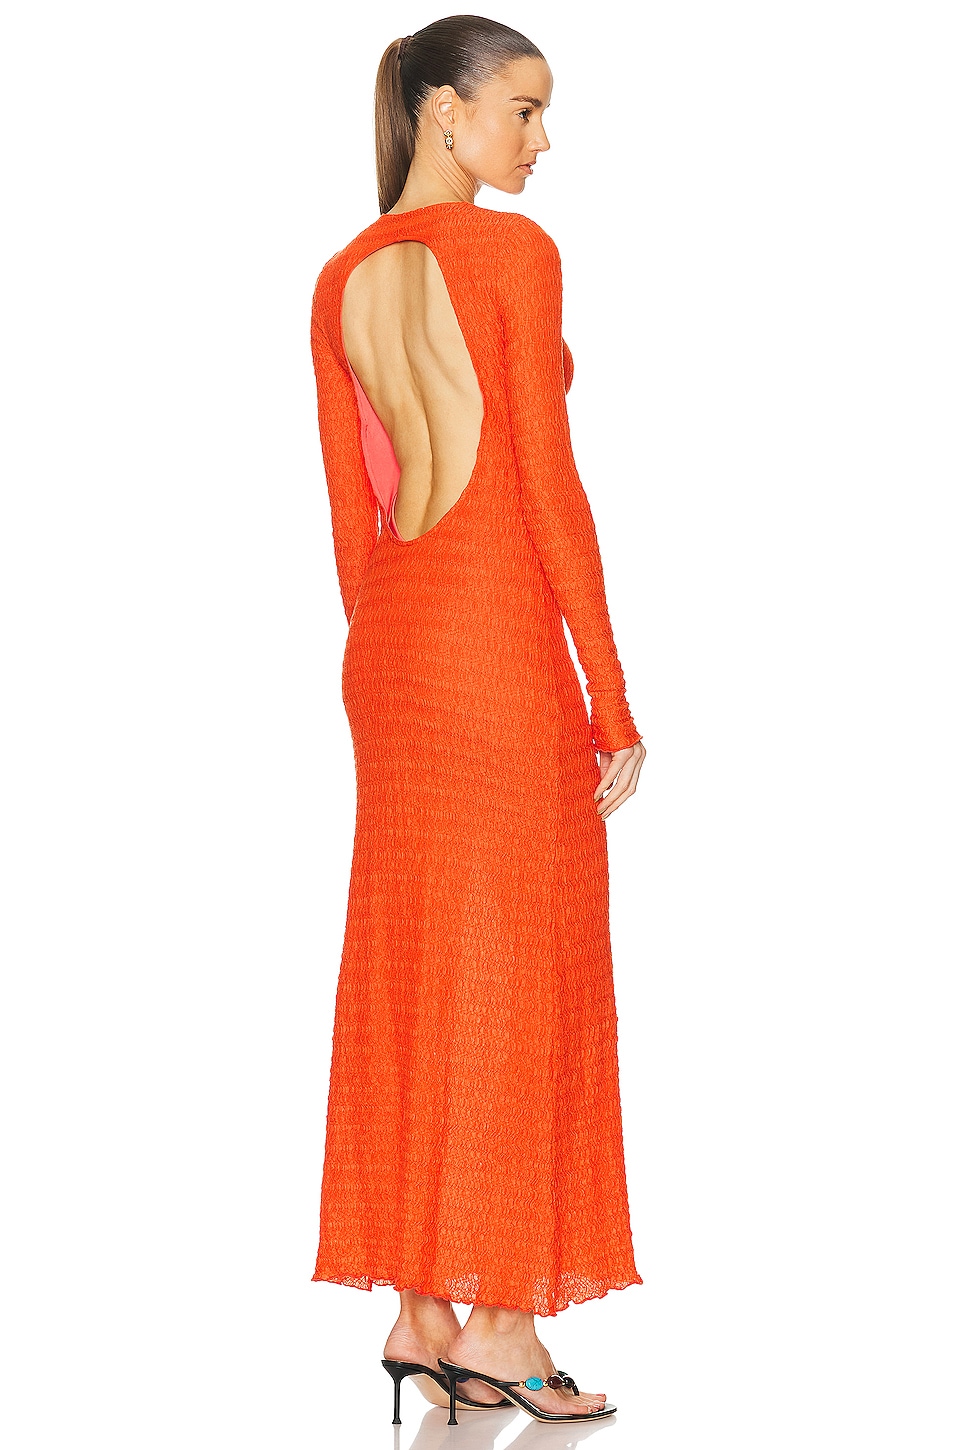 Lendi Open Back Textured Maxi Dress in Orange